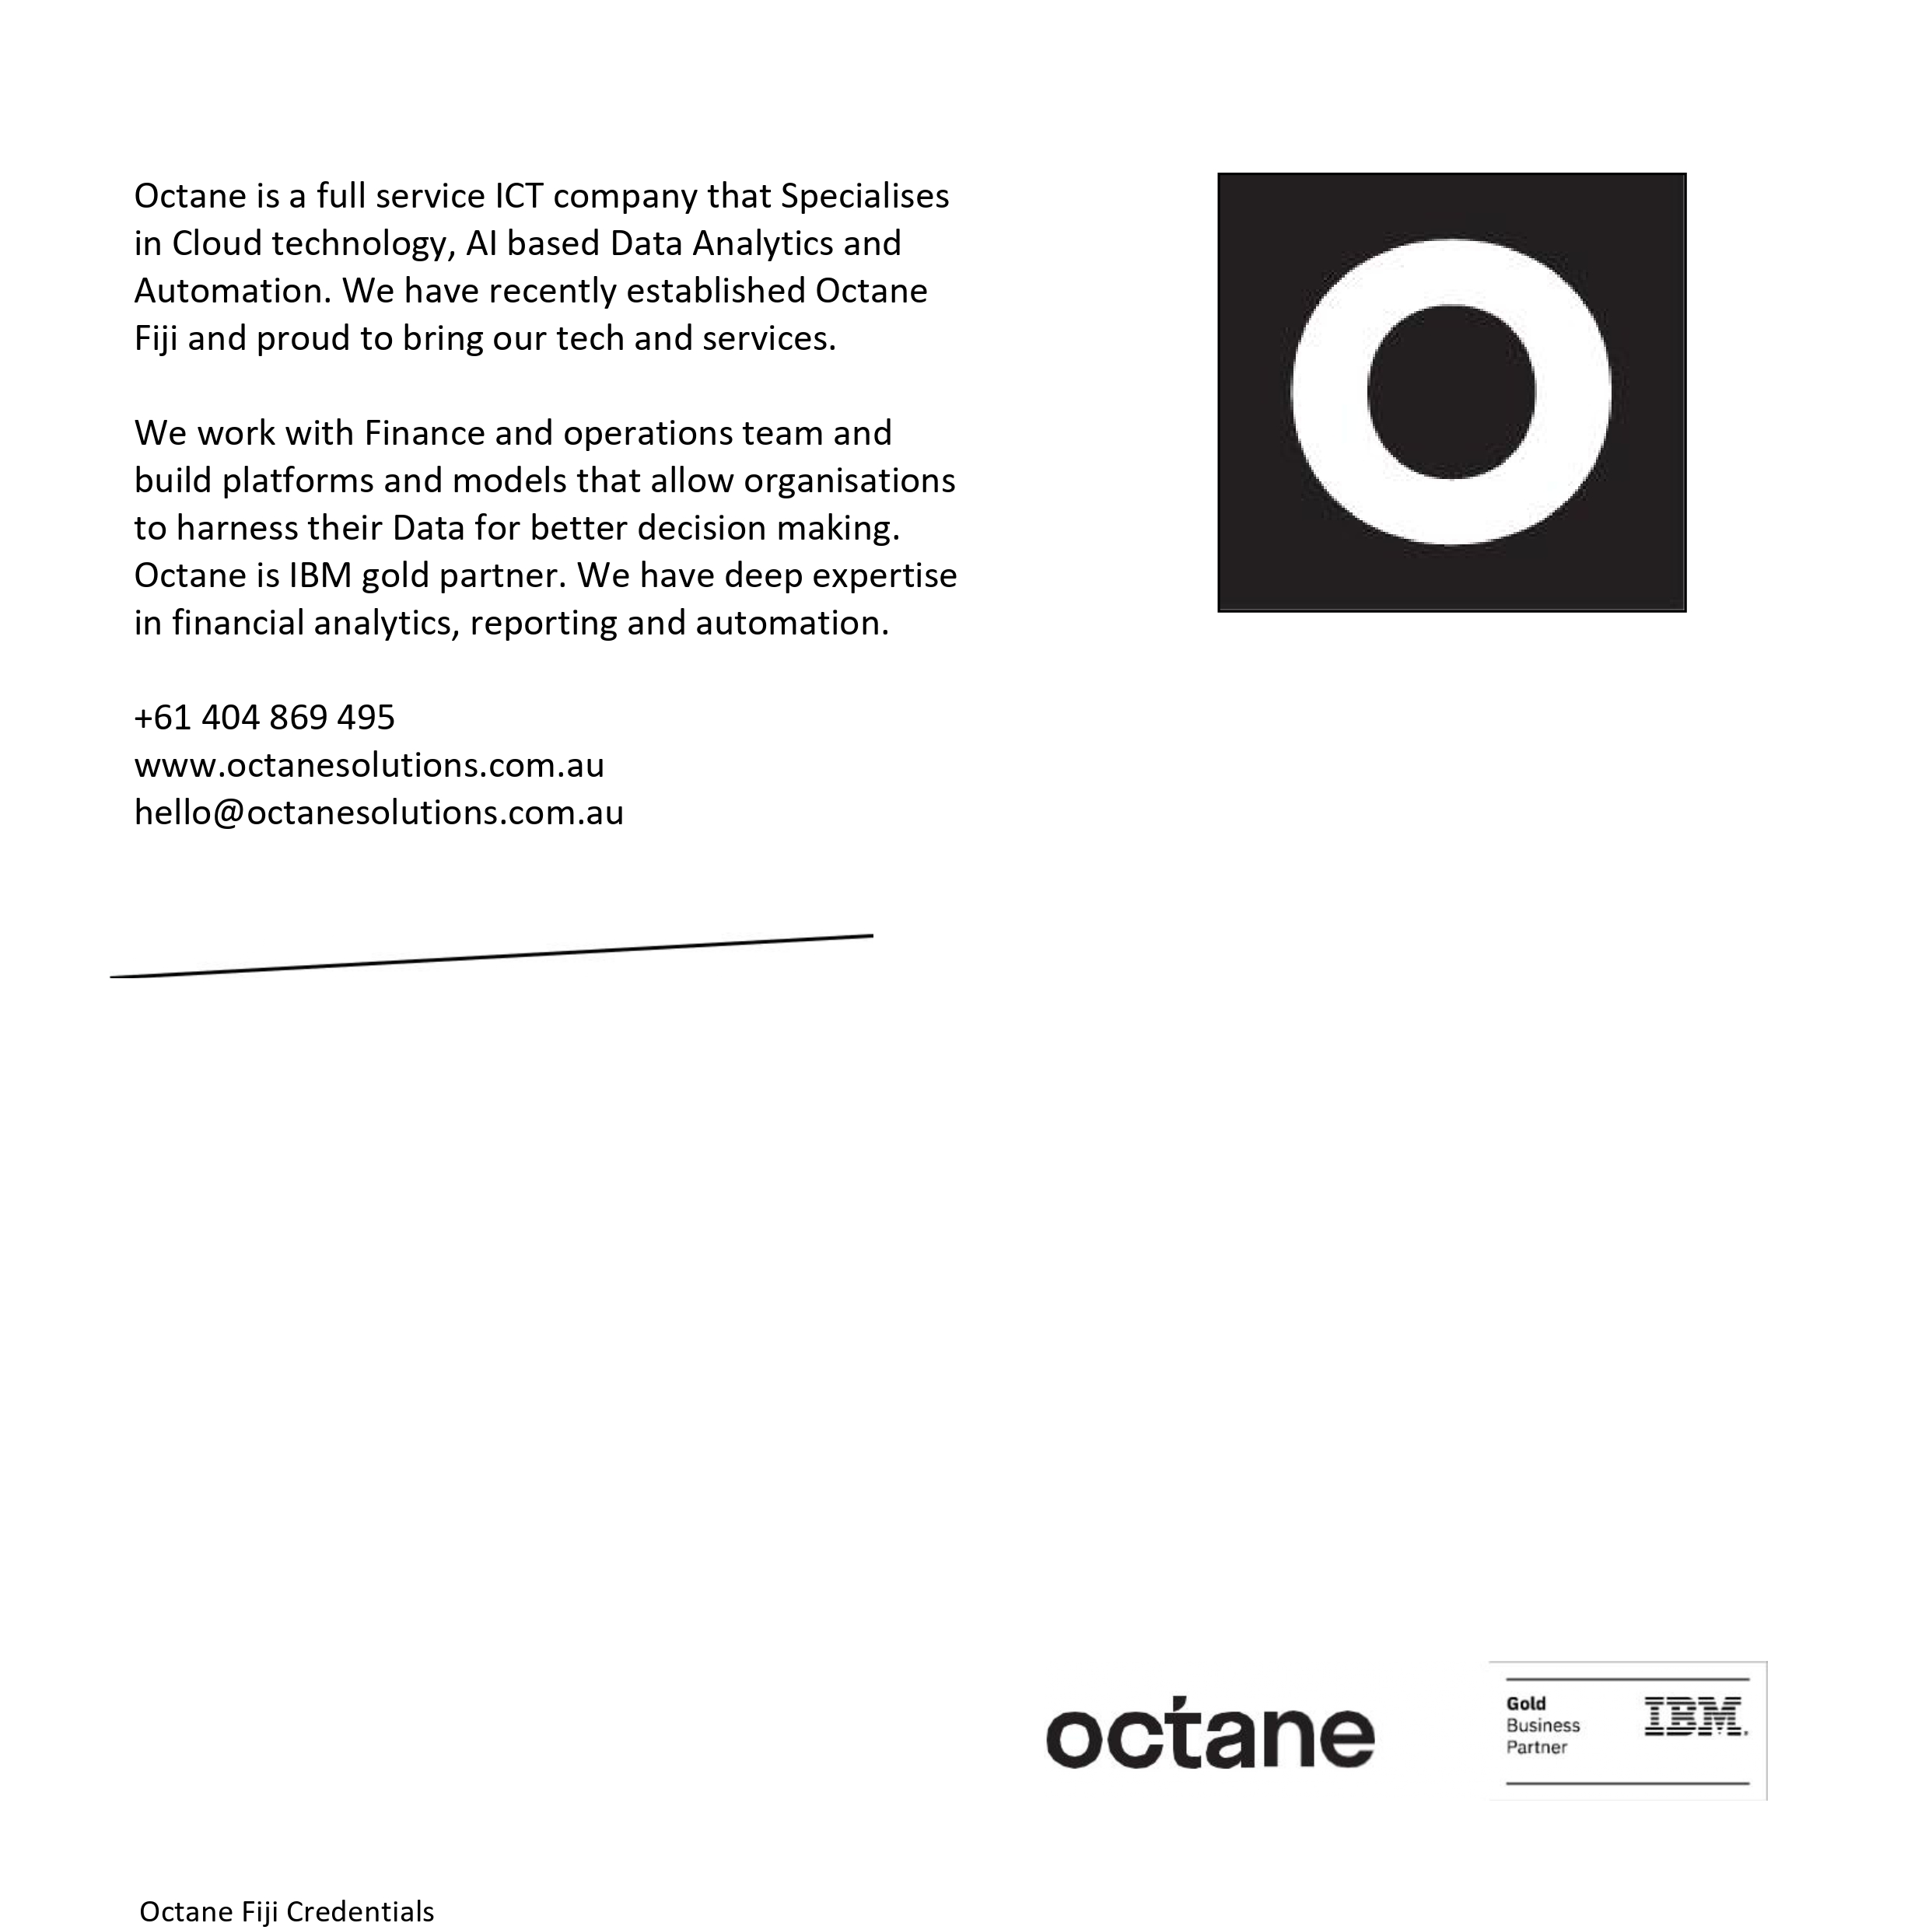 octane_credentials_brochure_fiji_v1.4(1)_page-0018